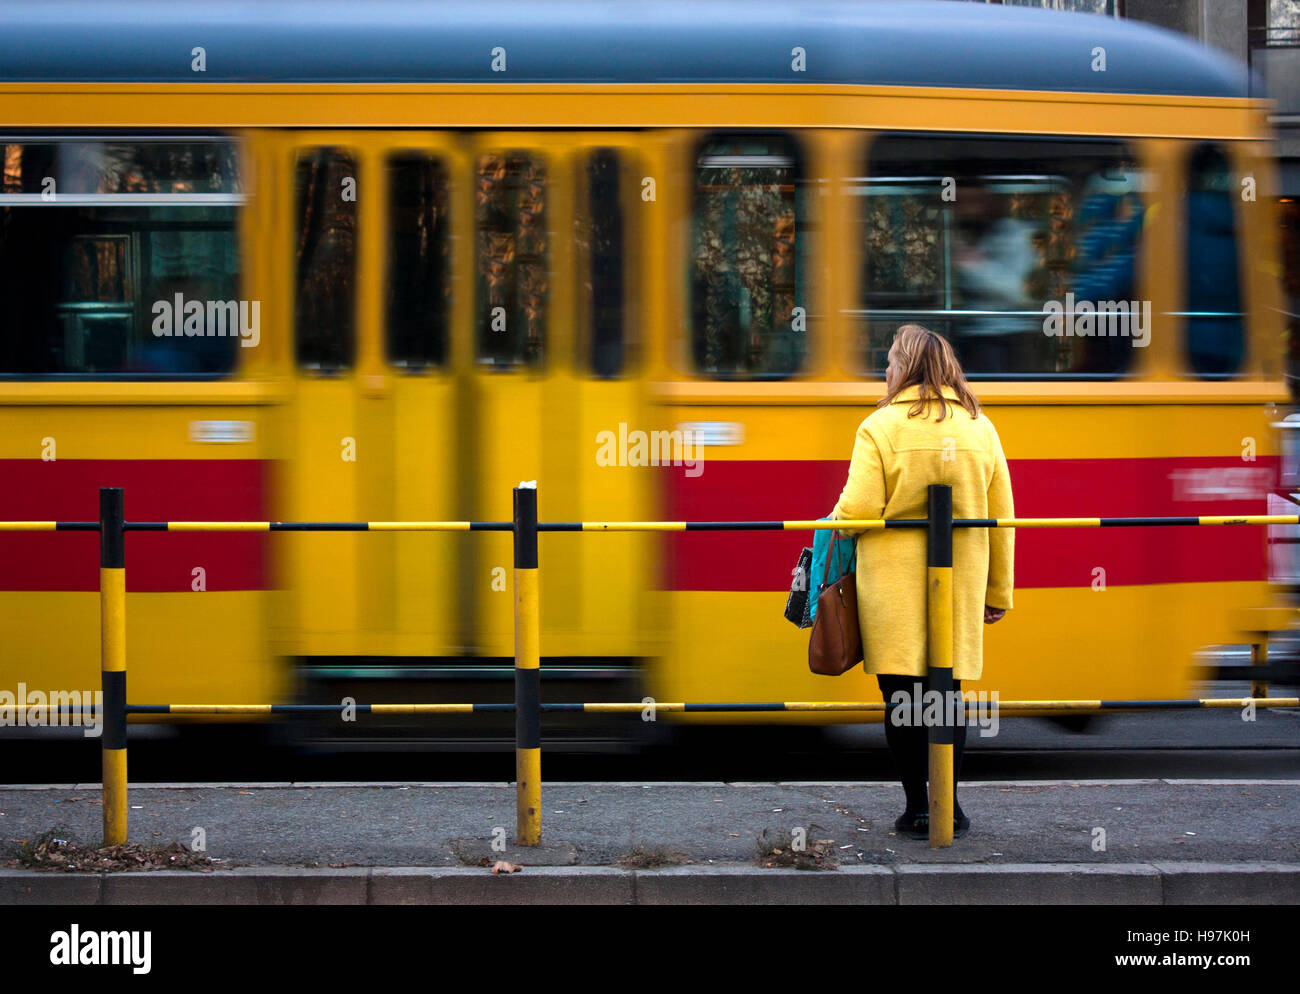 Frau im gelben Mantel und eine gelbe rote Straßenbahn vorbei in Motion blur Stockfoto